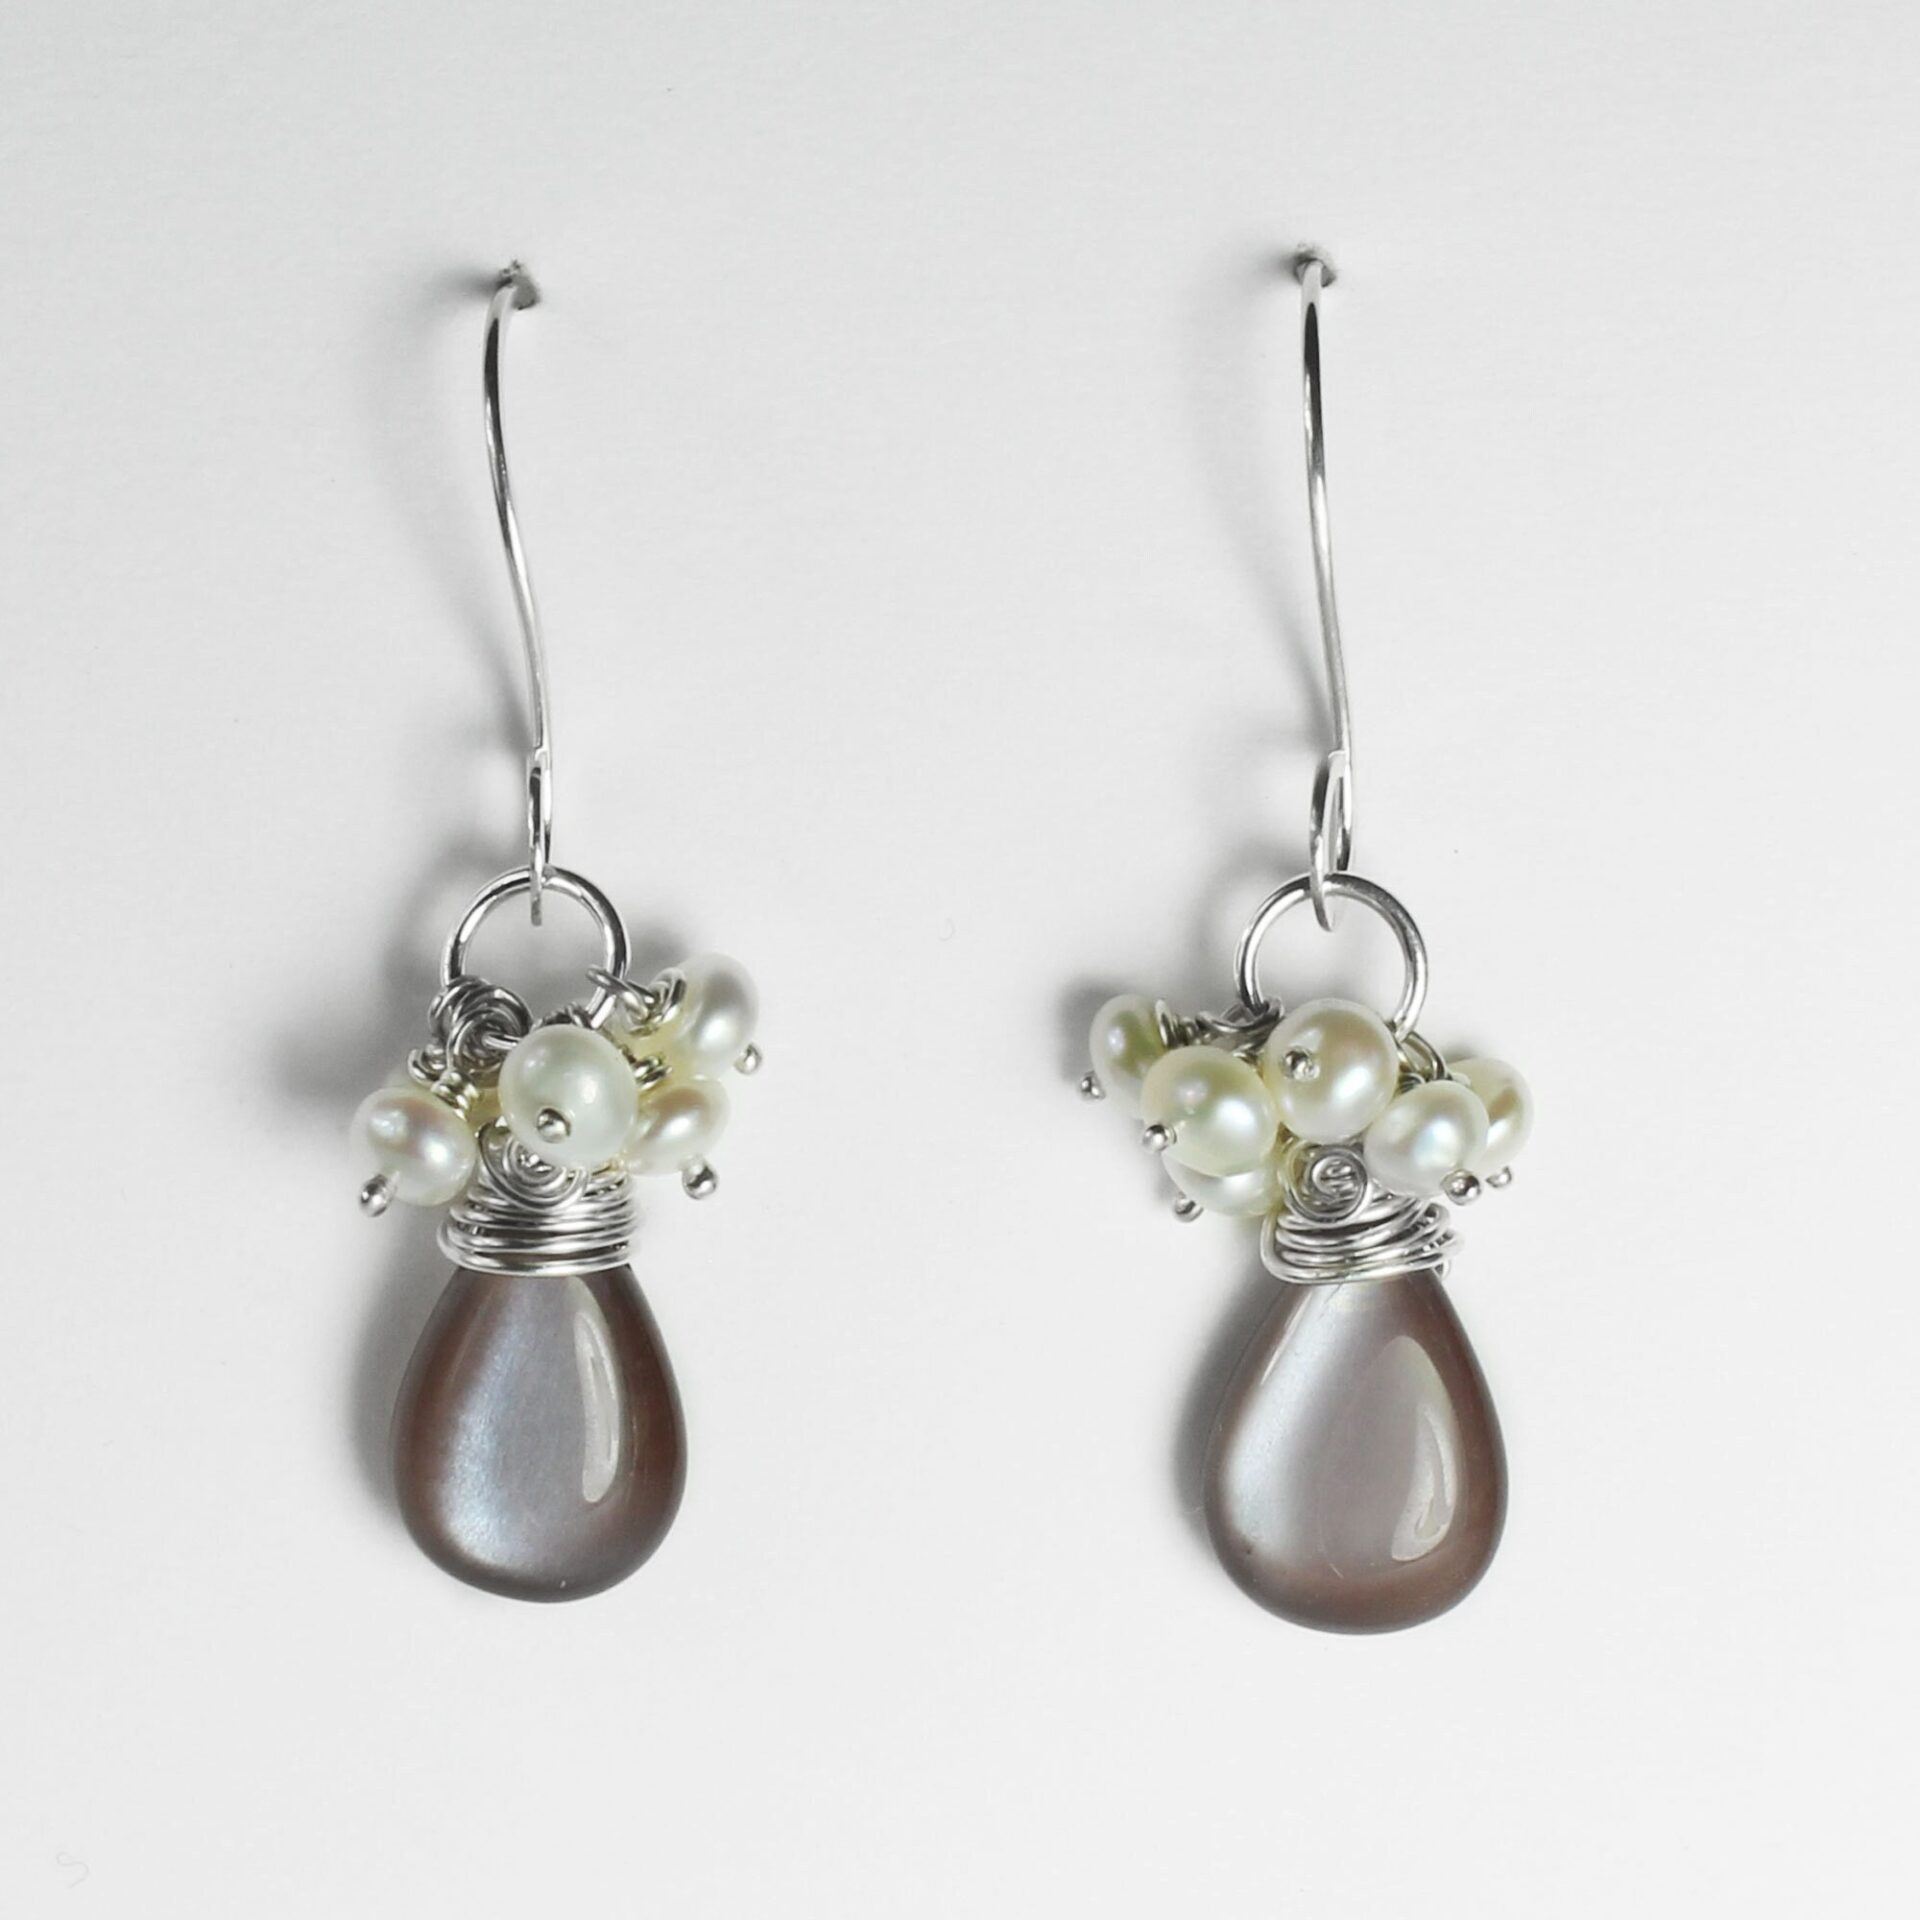 Brown Moonstone Earrings, White Pearls